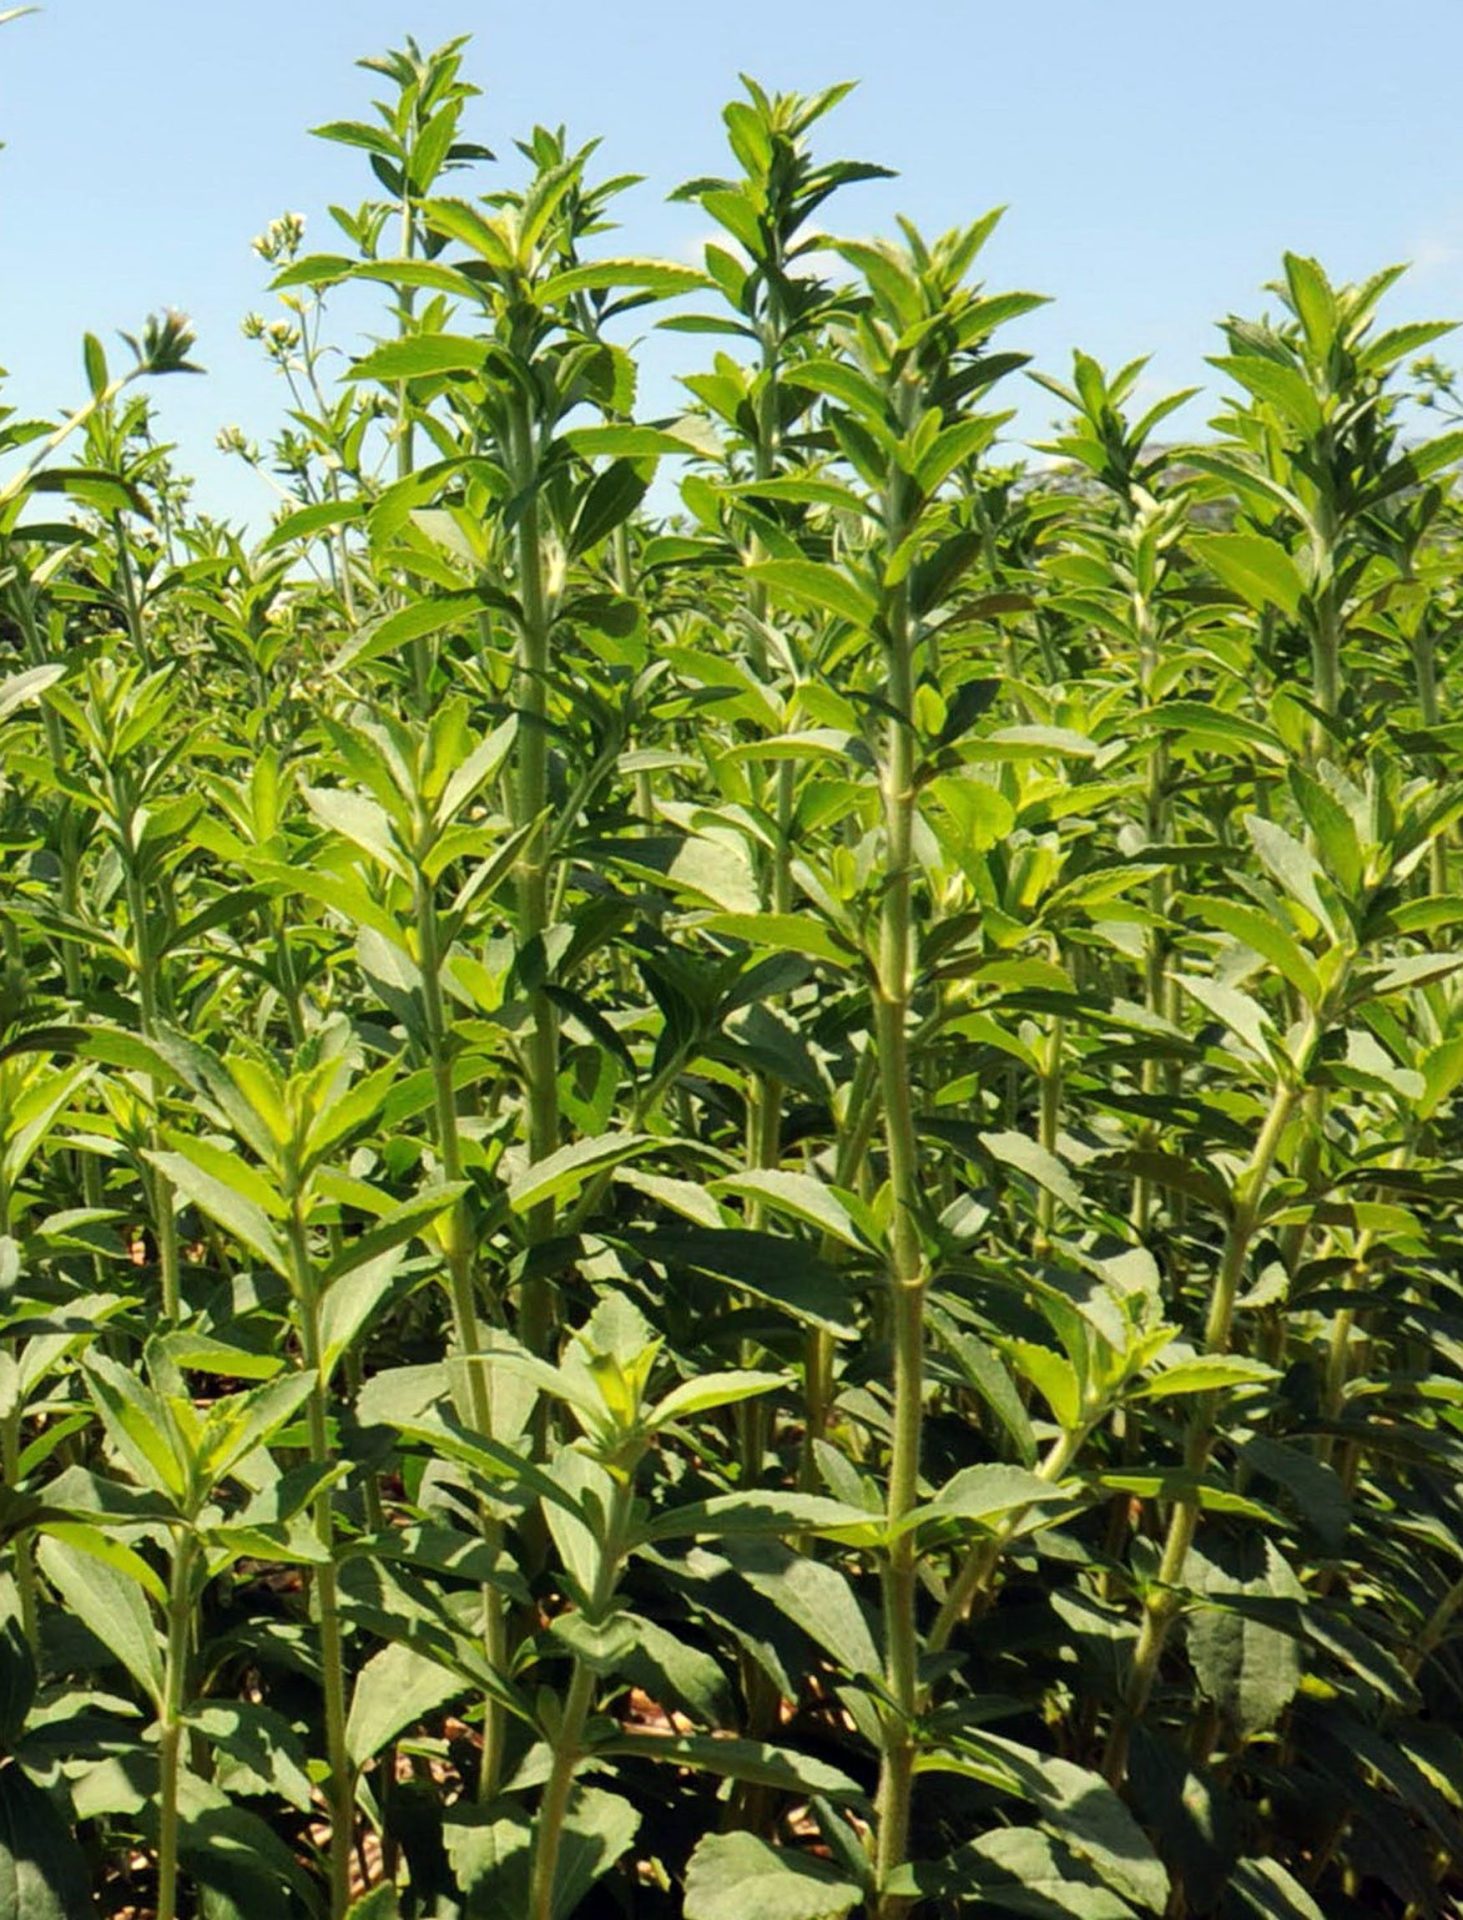 Existen diversas especies de la planta del stevia, conocida en Paraguay como "hierba dulce", o "Ka'a he'e" en lengua guaraní. AFP PHOTO Norberto Duarte